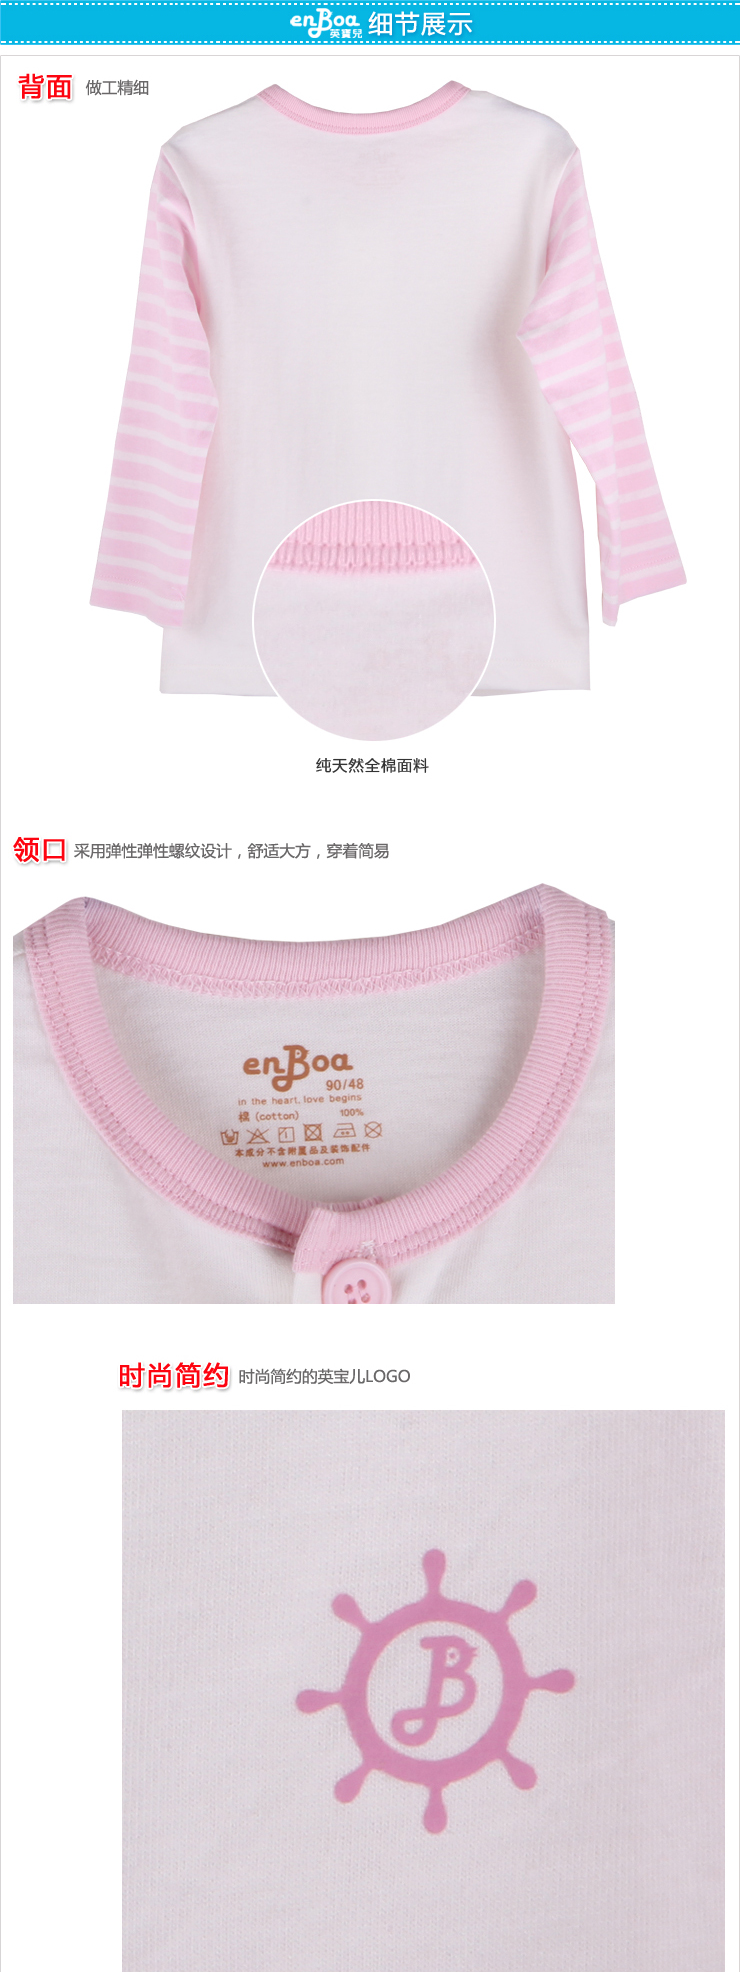 英宝儿 - enboa全棉儿童衣裤套装,产品编号37940